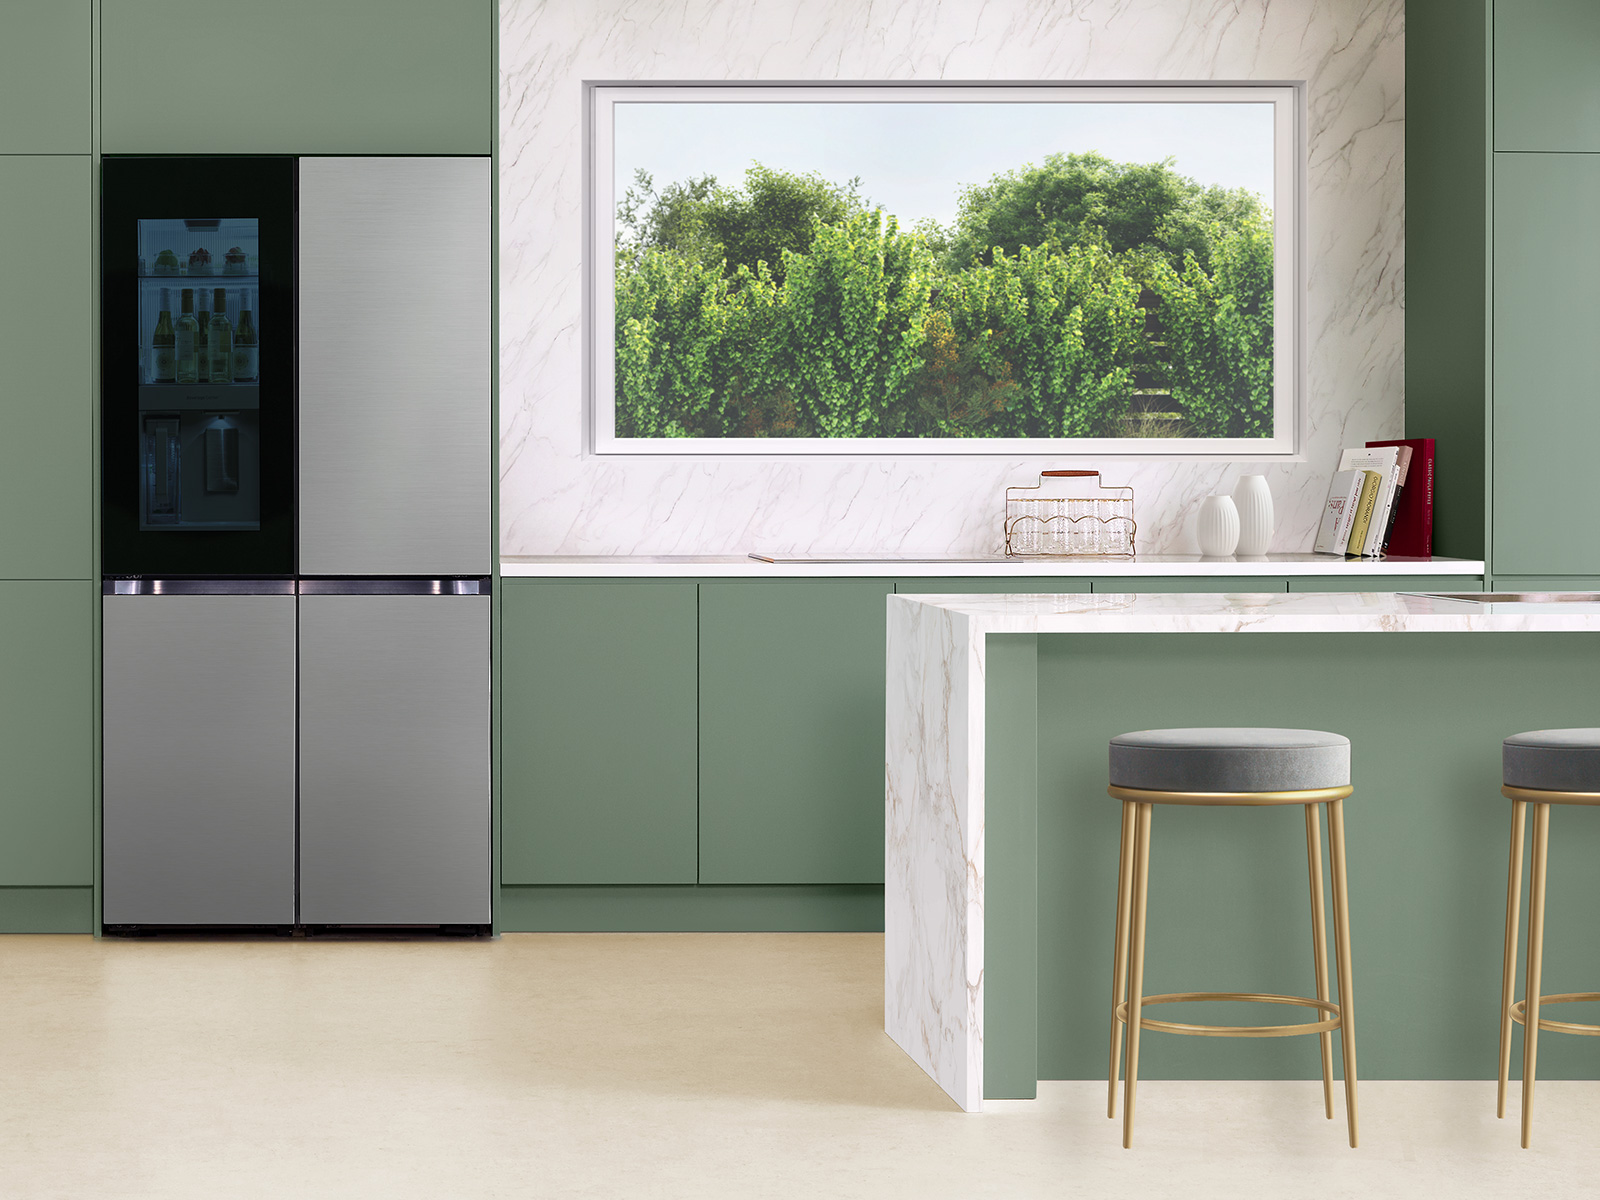 Thumbnail image of Bespoke 4-Door Flex™ Refrigerator (29 cu. ft.) with Beverage Zone™ and Auto Open Door in Stainless Steel